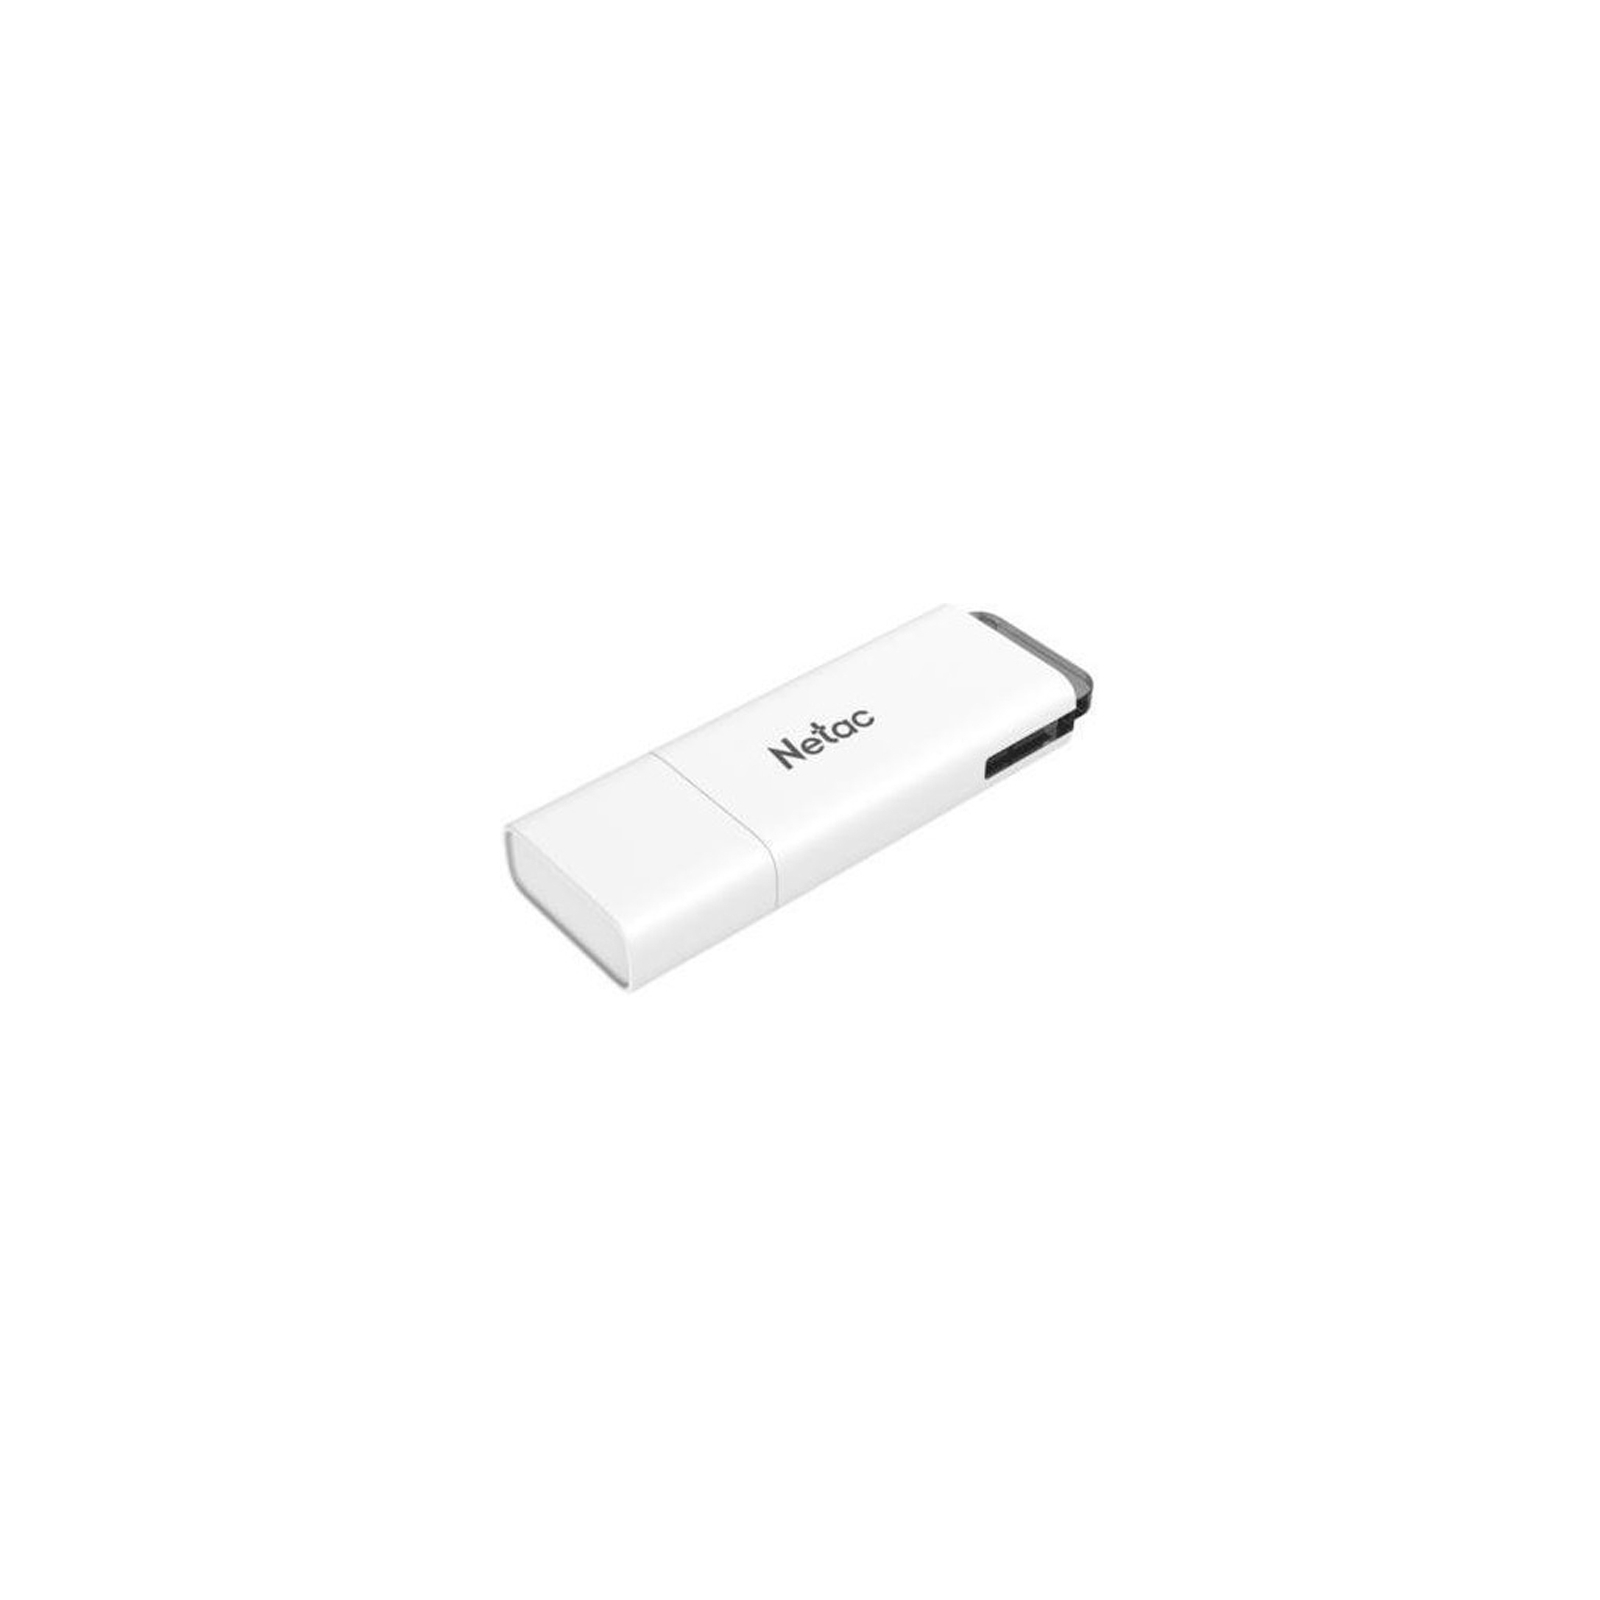 USB флеш накопичувач Netac 32GB U185 USB 2.0 (NT03U185N-032G-20WH)